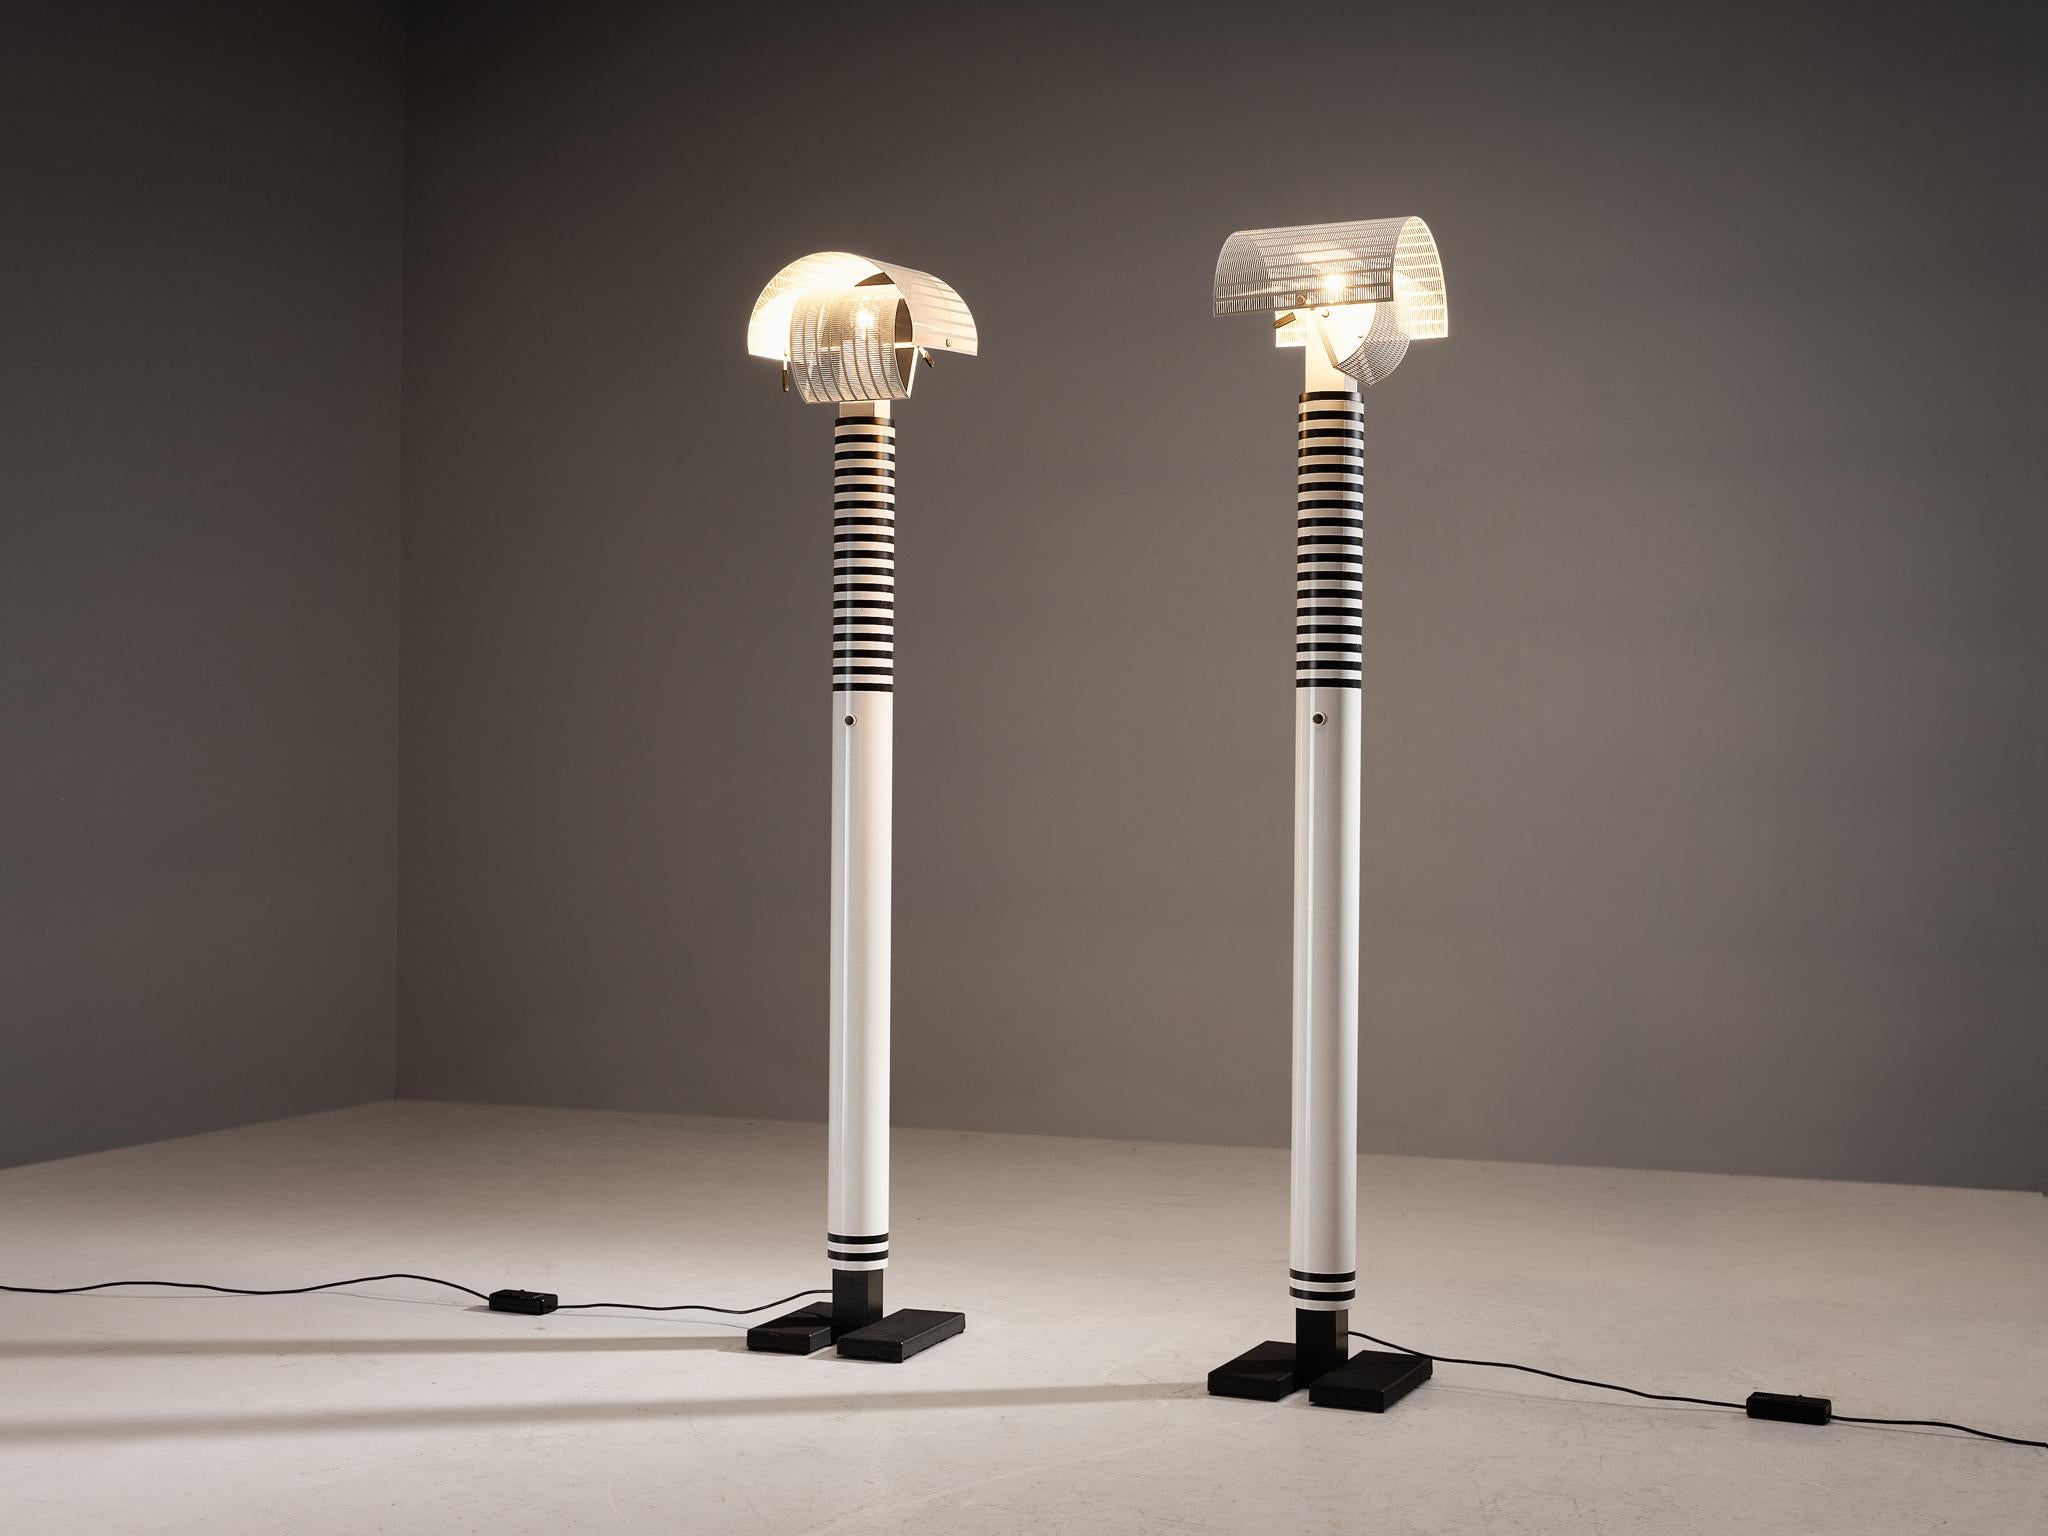 Mario Botta für Artemide, 'Shogun' Stehleuchten, Aluminium, Stahl, Italien, 1986 

Mario Botta bezeichnete die Lampen als 